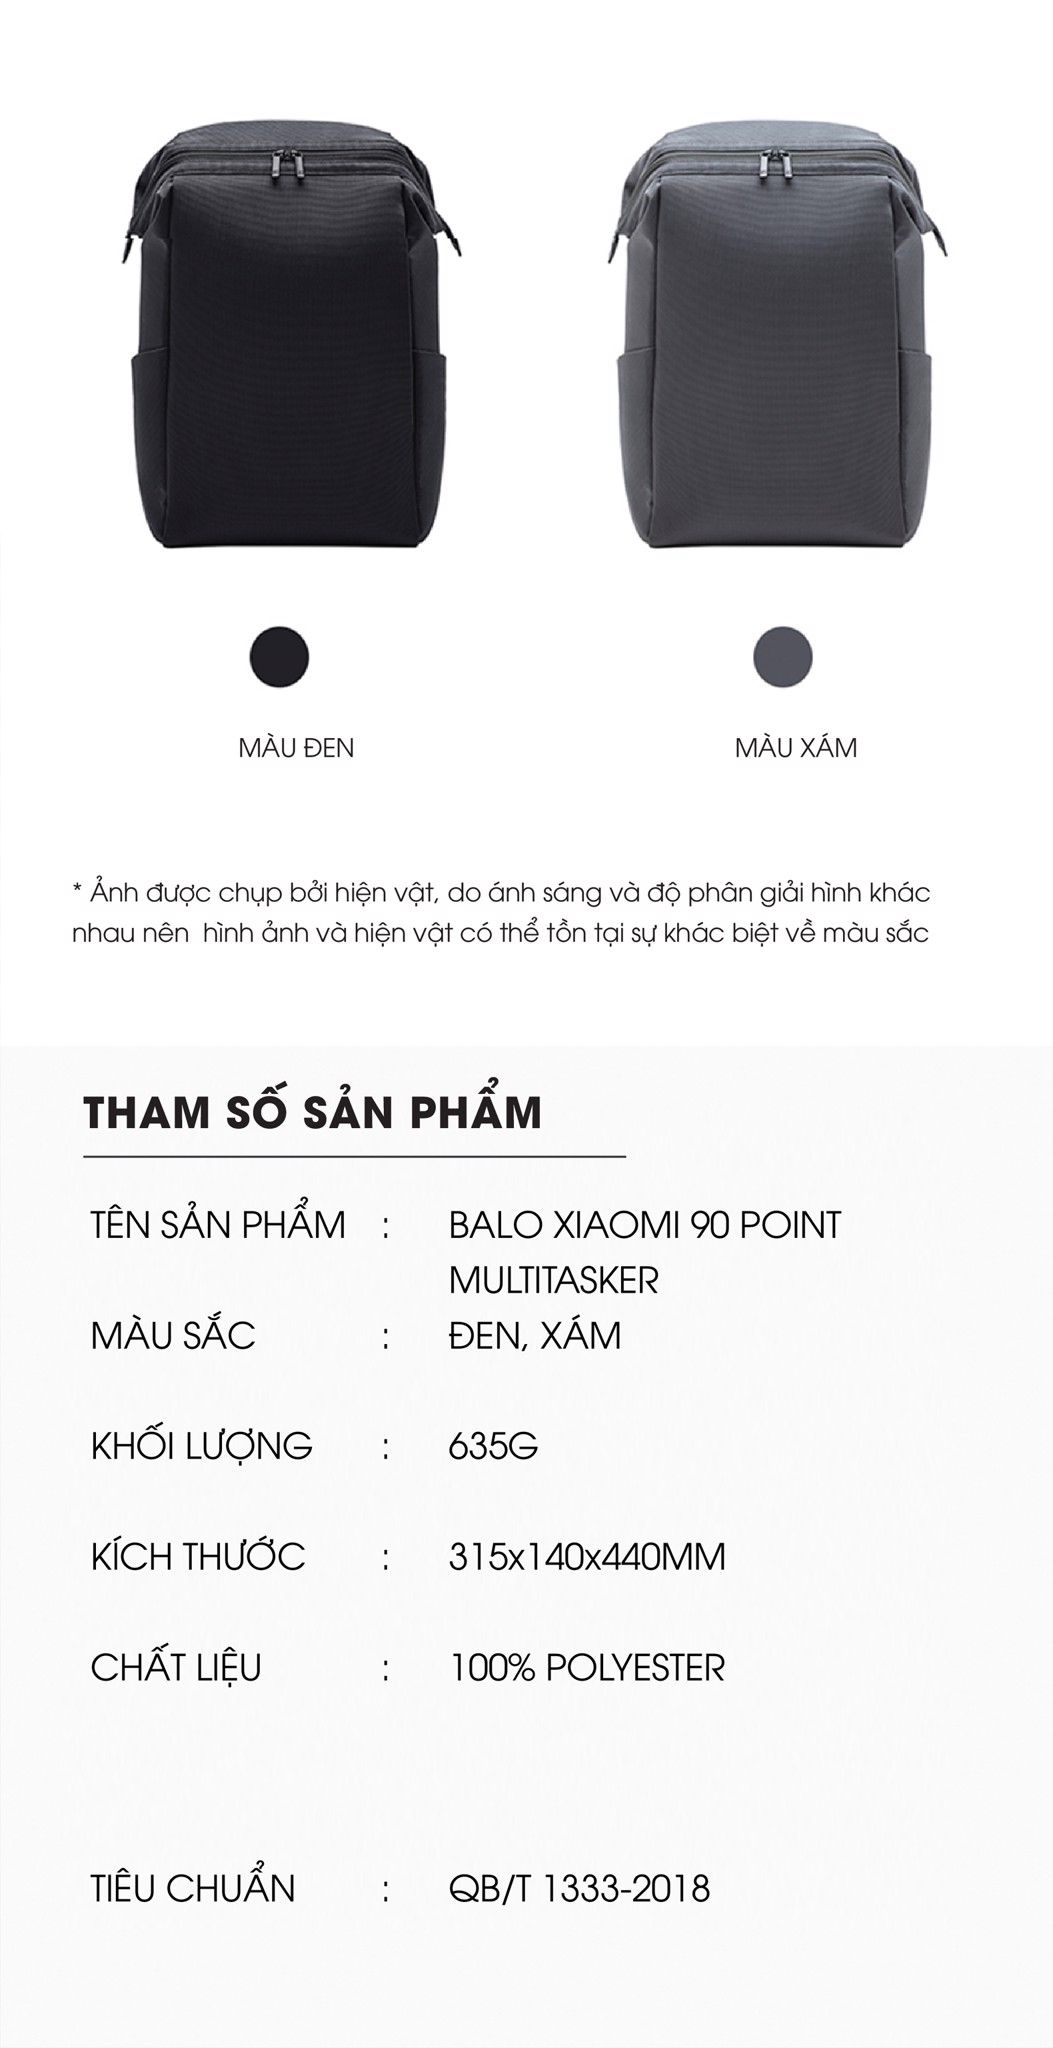  Balo Unisex Xiaomi 90 Point Multitasker 